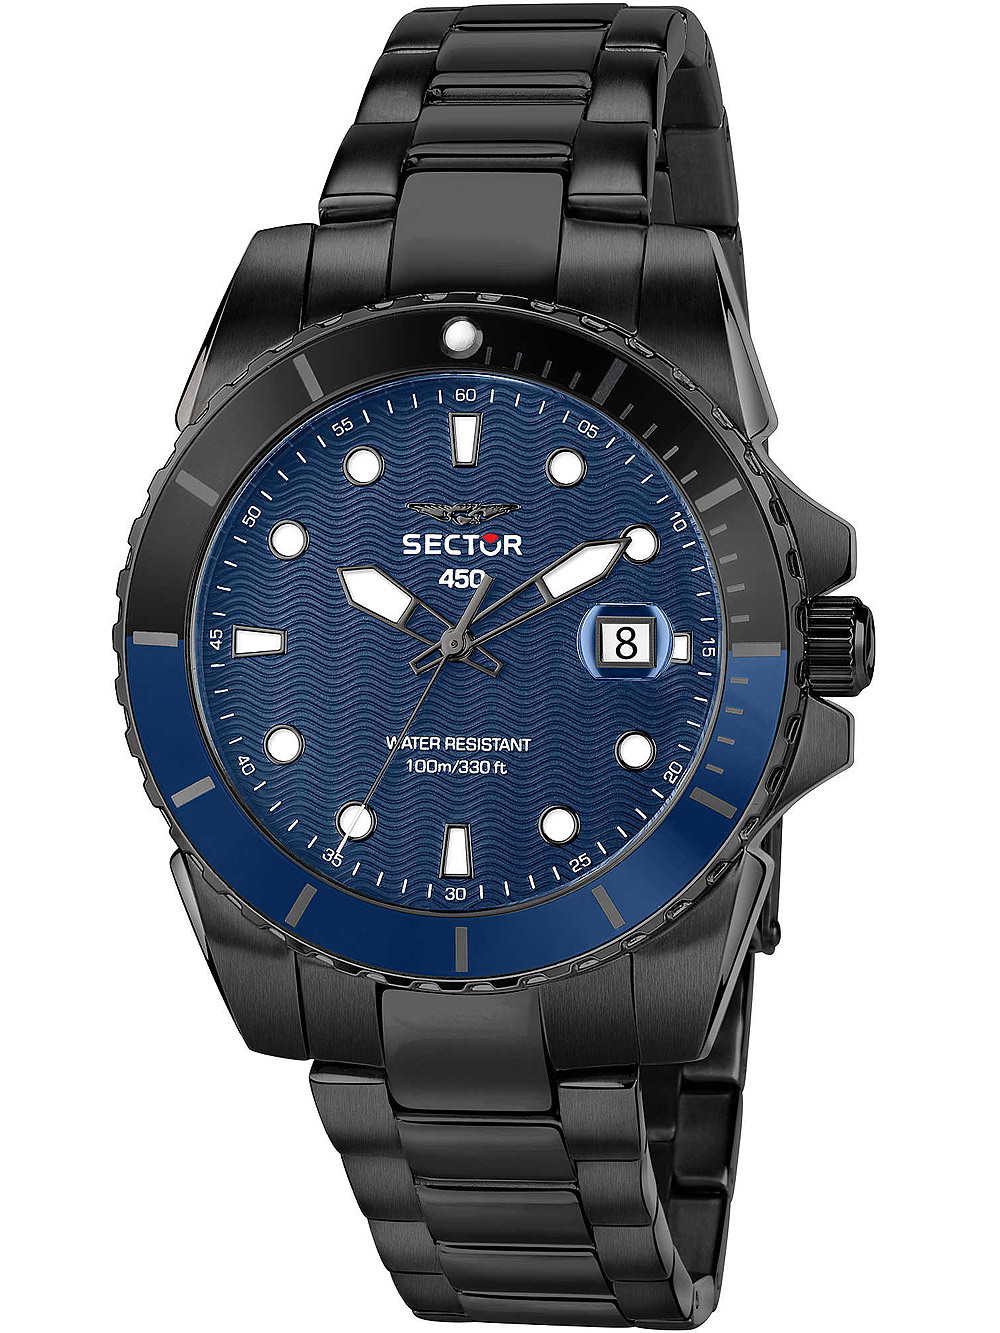 Pánské hodinky Sector R3253276001 Serie 450